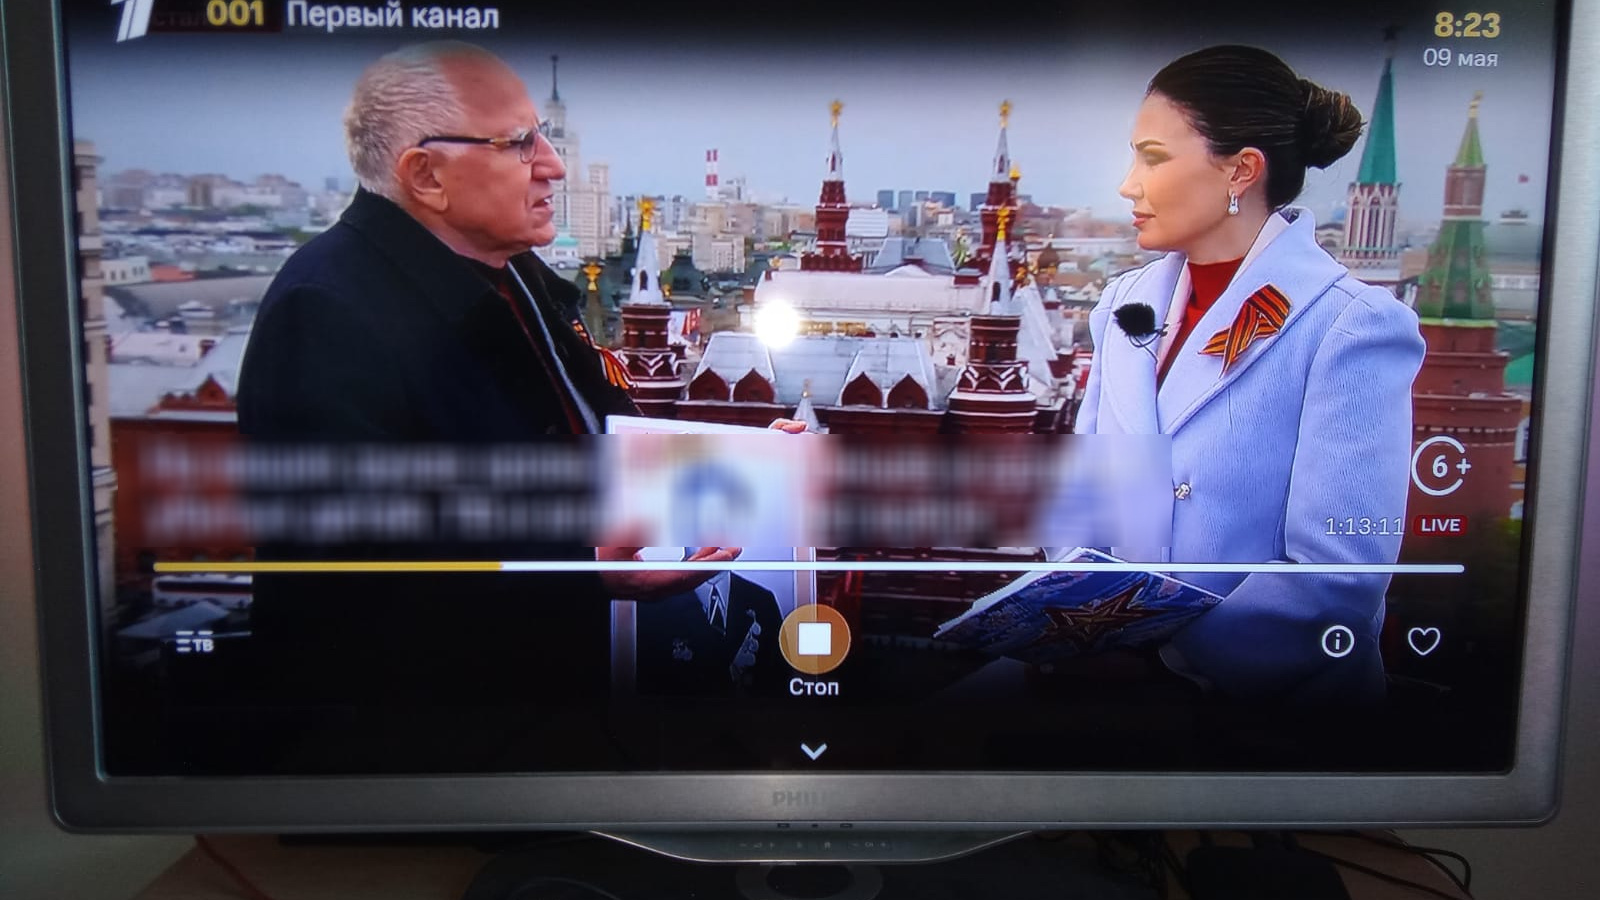 Хакеры взломали спутниковое телевидение в России, чтобы испортить День Победы